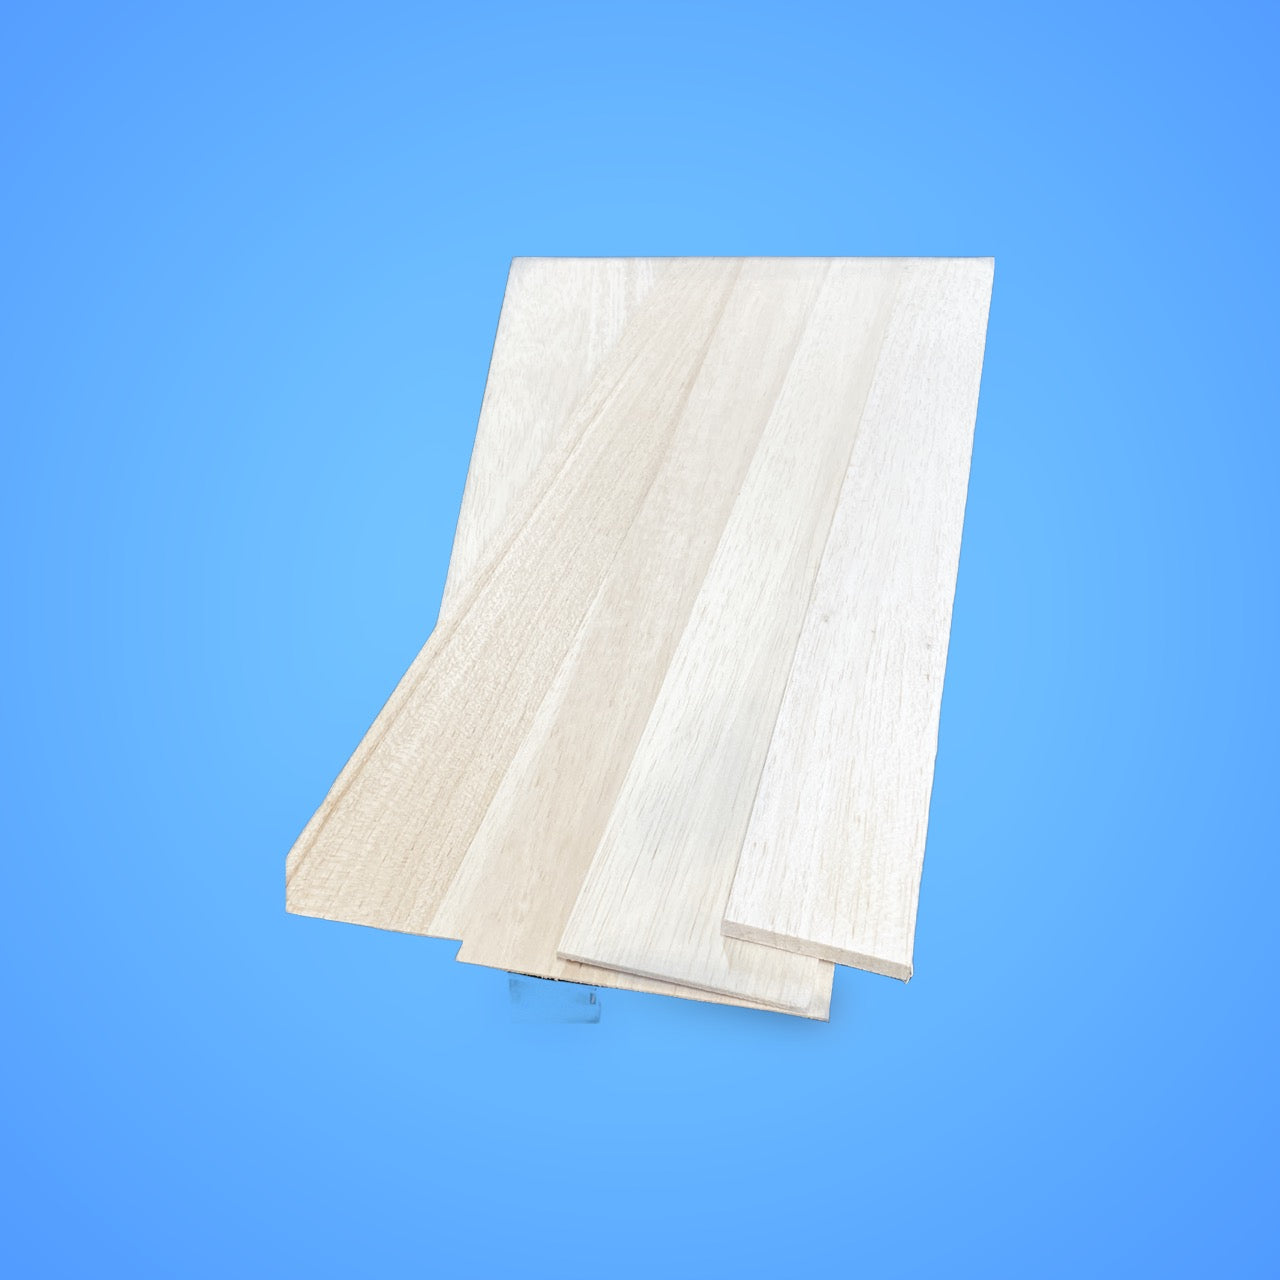 1/32 x 1 x 48 Balsa Wood Sheet